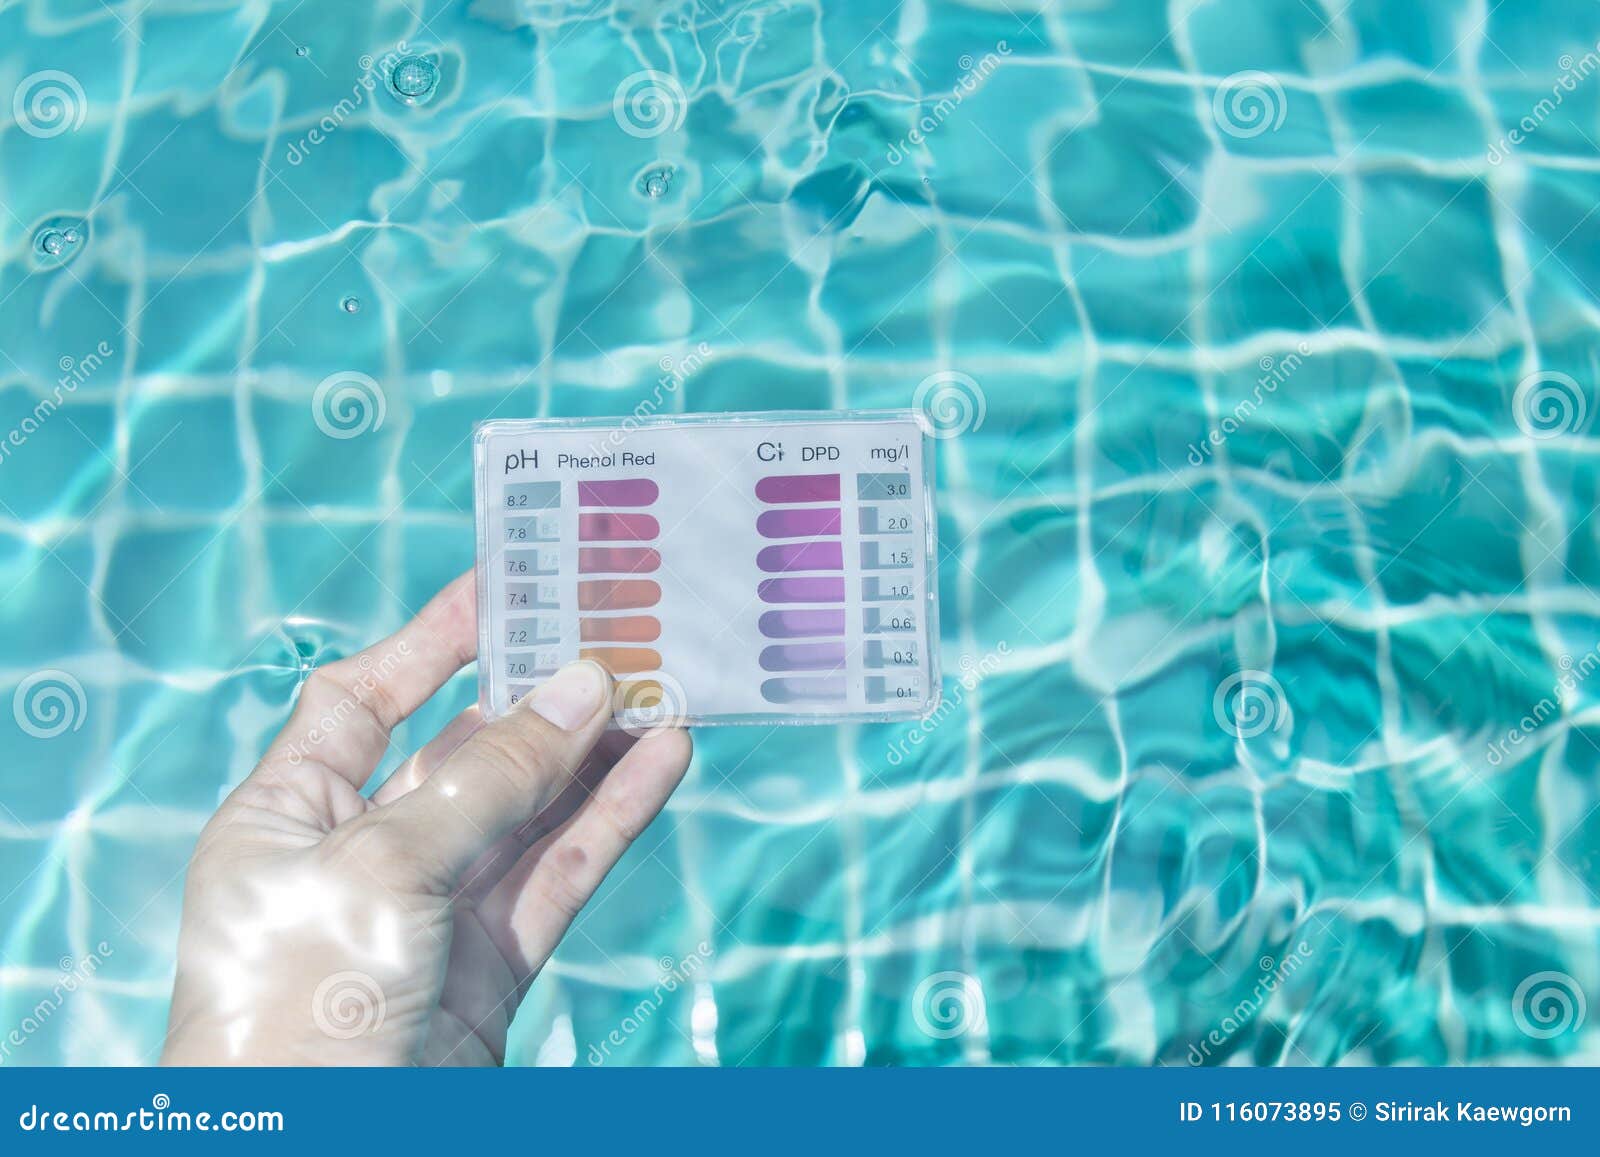 Анализ воды в бассейне. Проба воды в бассейне. Измерение хлора в бассейне. Контроль качества воды в бассейне. PH воды в бассейне.